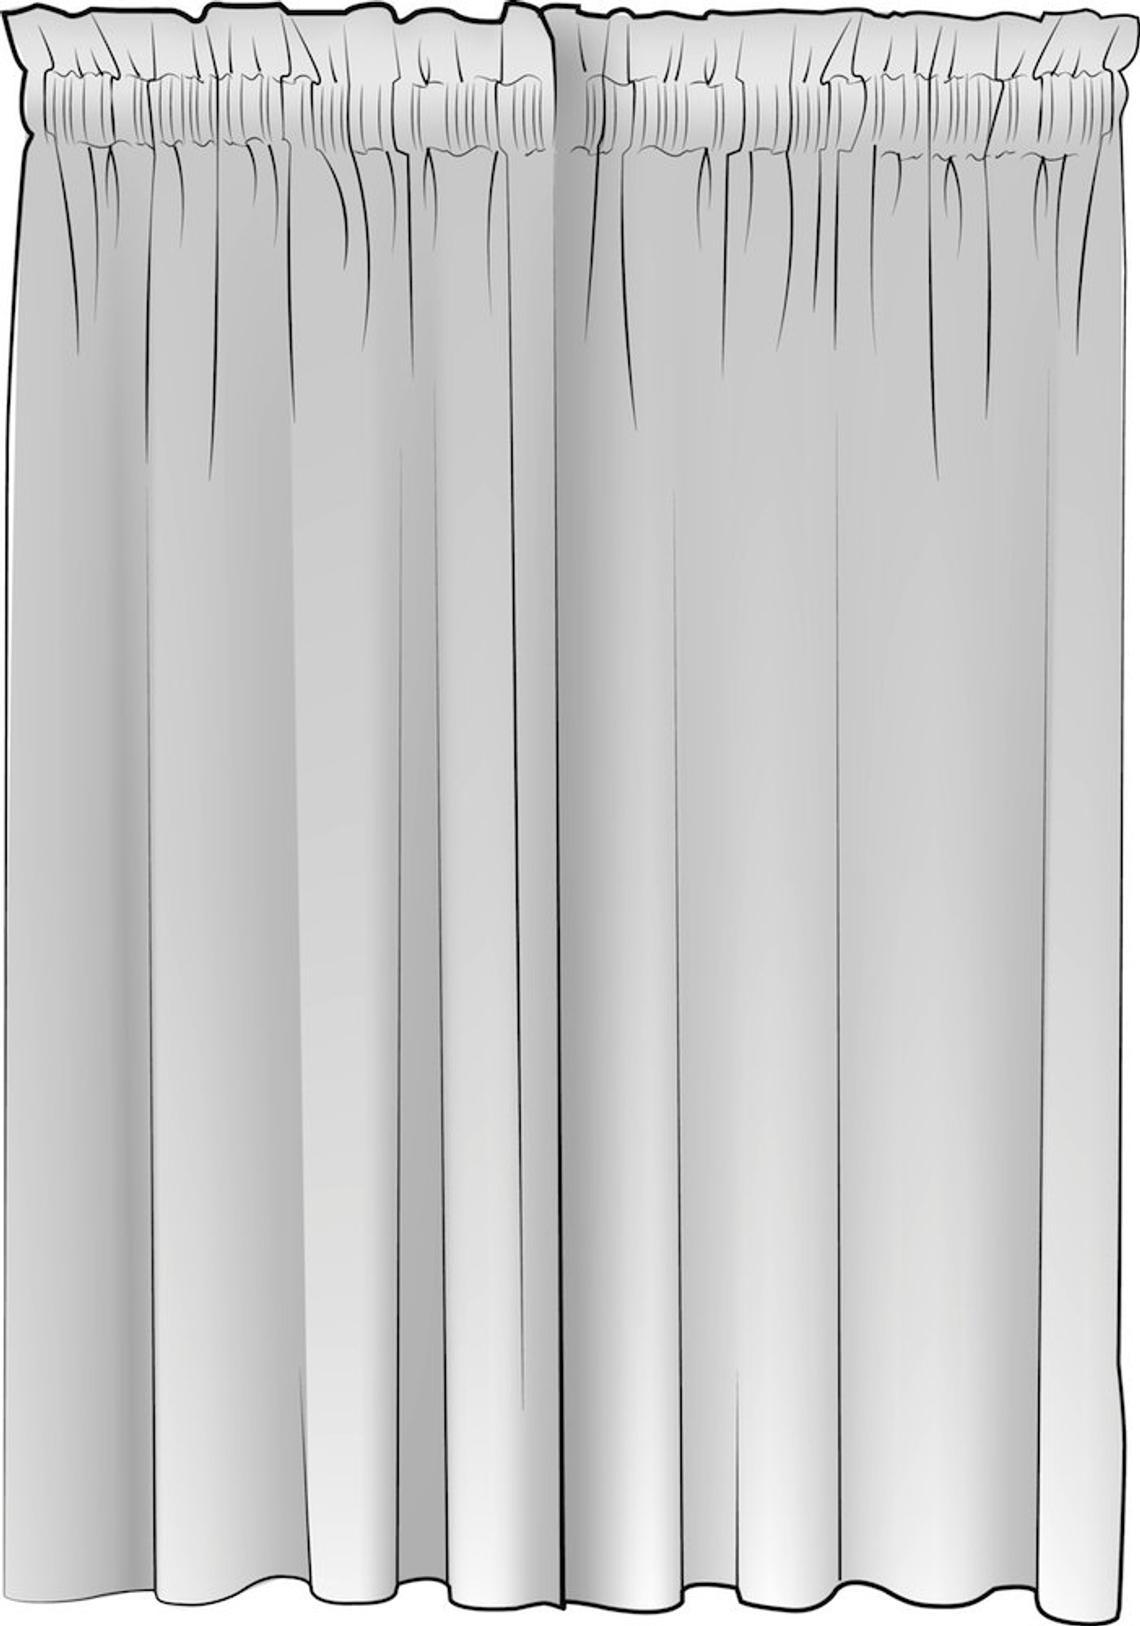 rod pocket curtain panels pair in modern farmhouse abbot waterbury spa green windowpane plaid